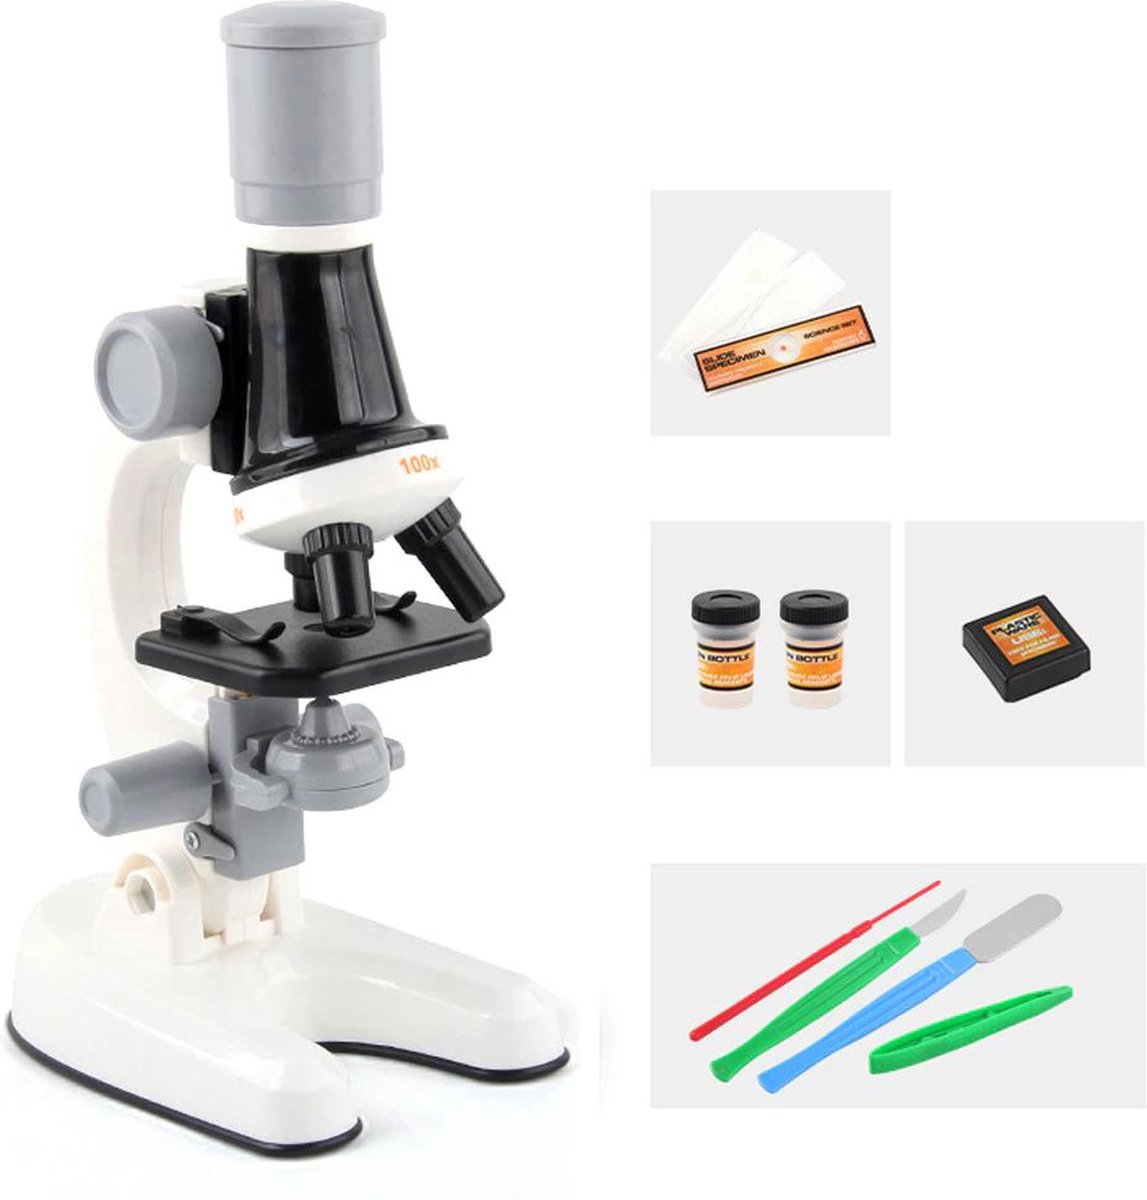 Maenor® Biologische microscoop voor kinderen - Microscoop junior - Tot 1200x zoom - LED verlichting - Inclusief preparaten - Wit